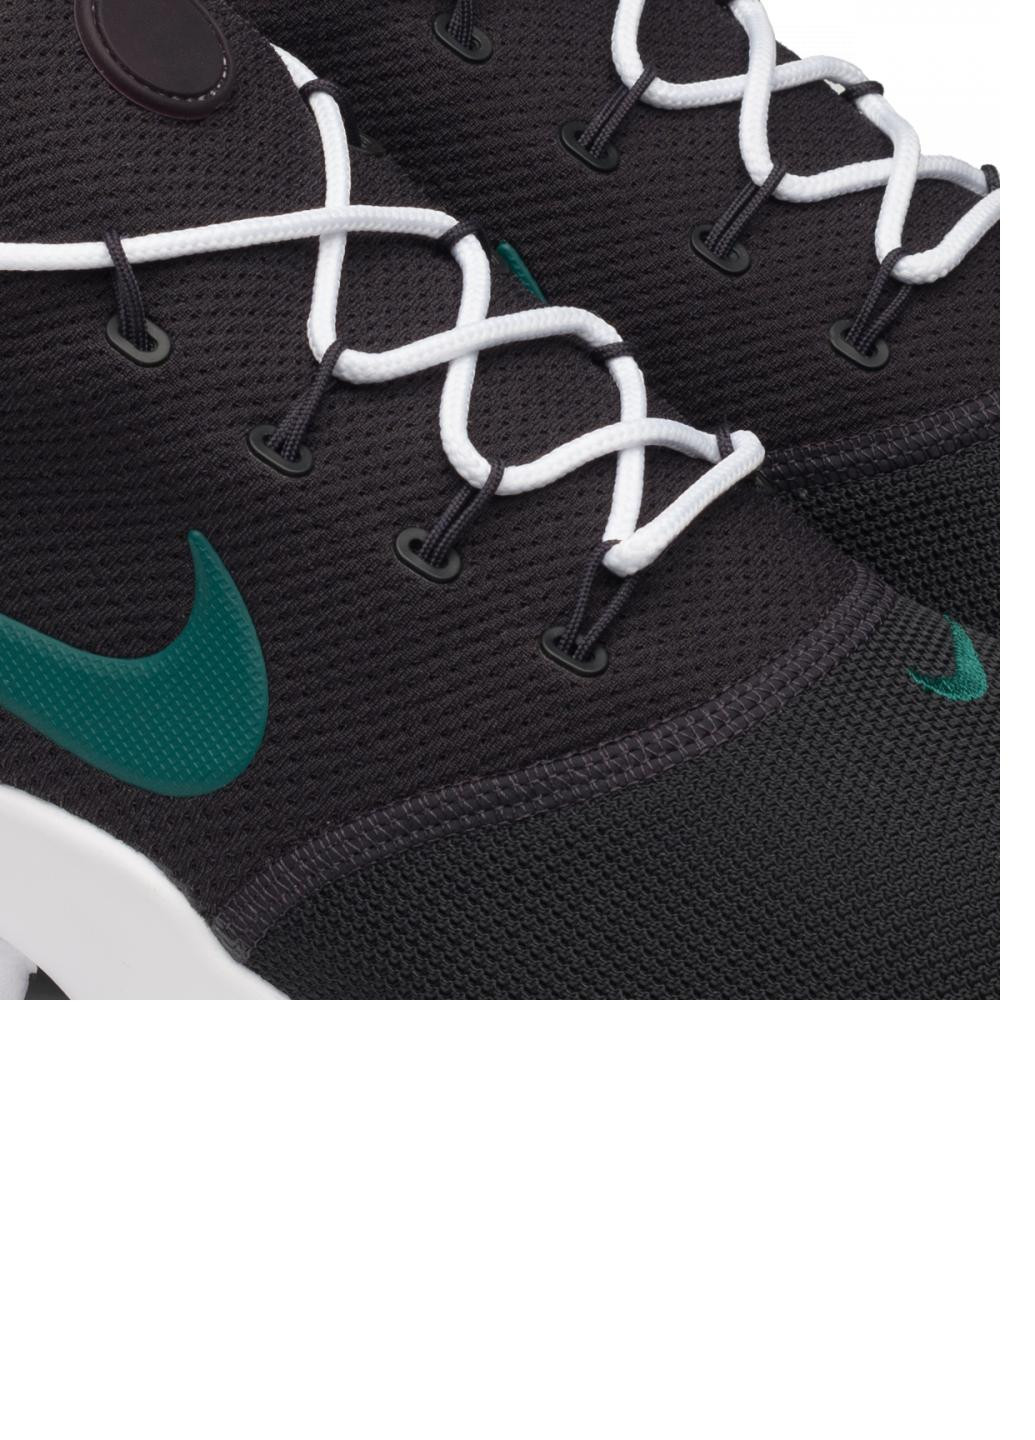 Черные демисезонные кроссовки presto fly 908019-015 Nike